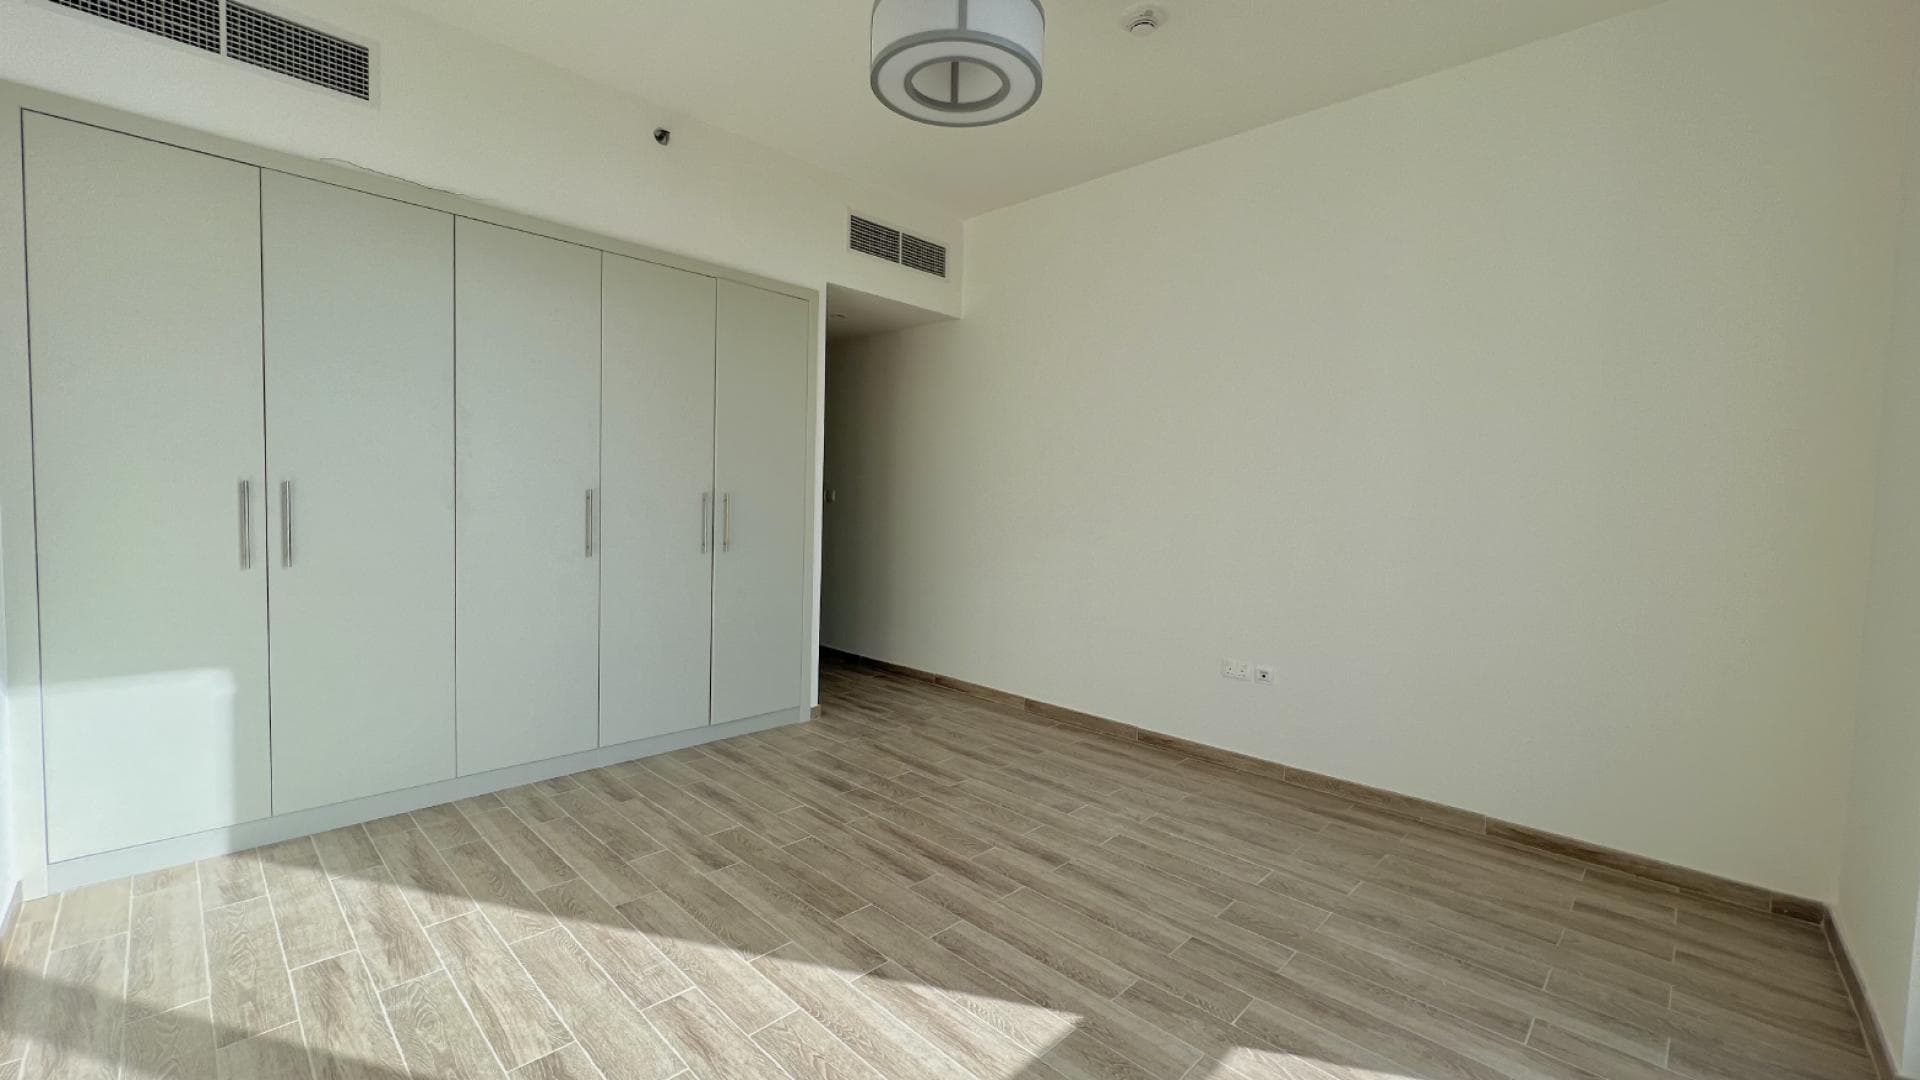 2 Bedroom Apartment For Rent Al Thamam 19 Lp35769 1bc8c9868a36d10.png